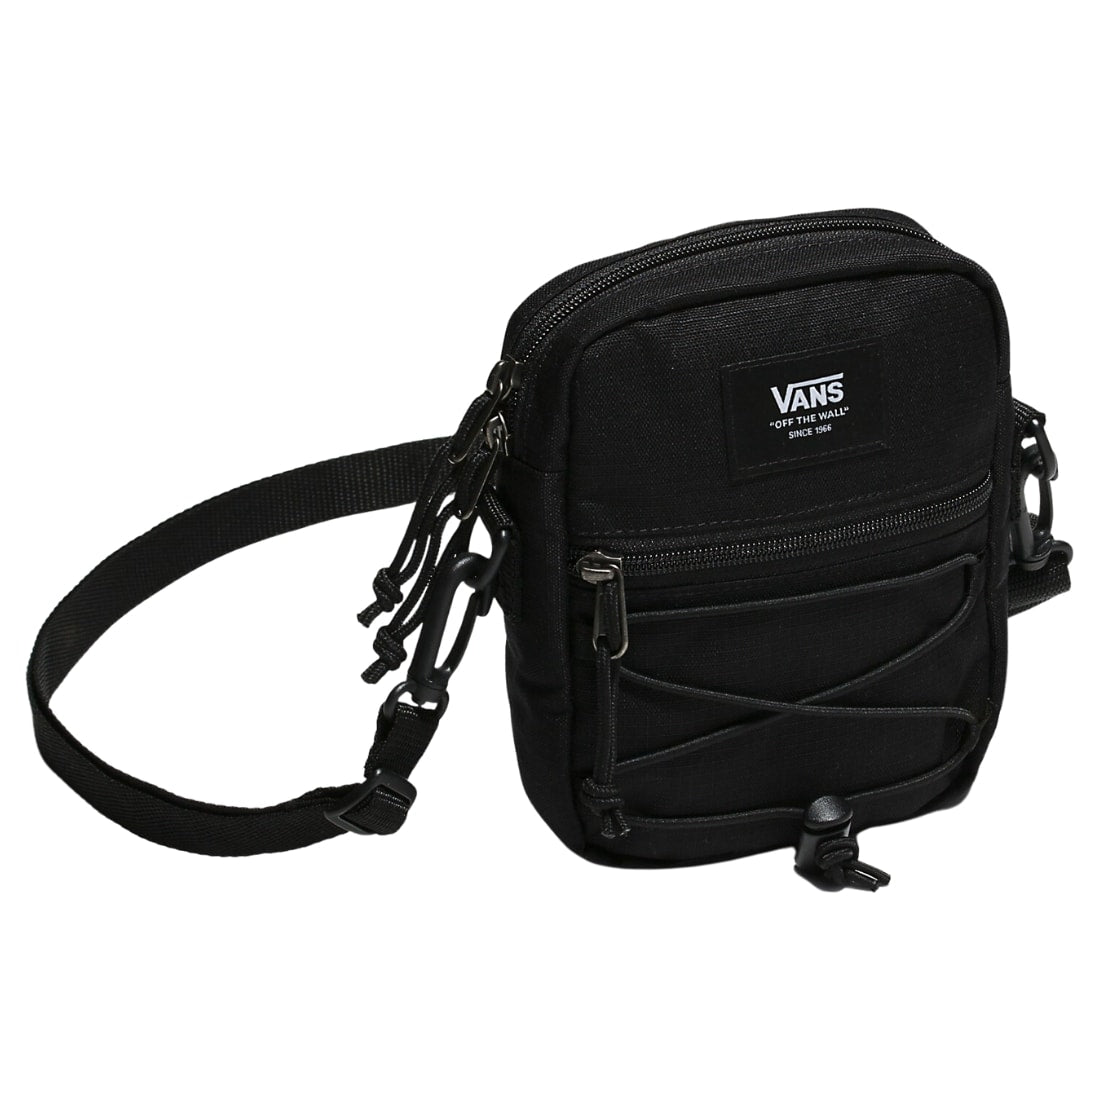 Vans Bail Shoulder Bag - Black/White - Backpack by Vans One Size